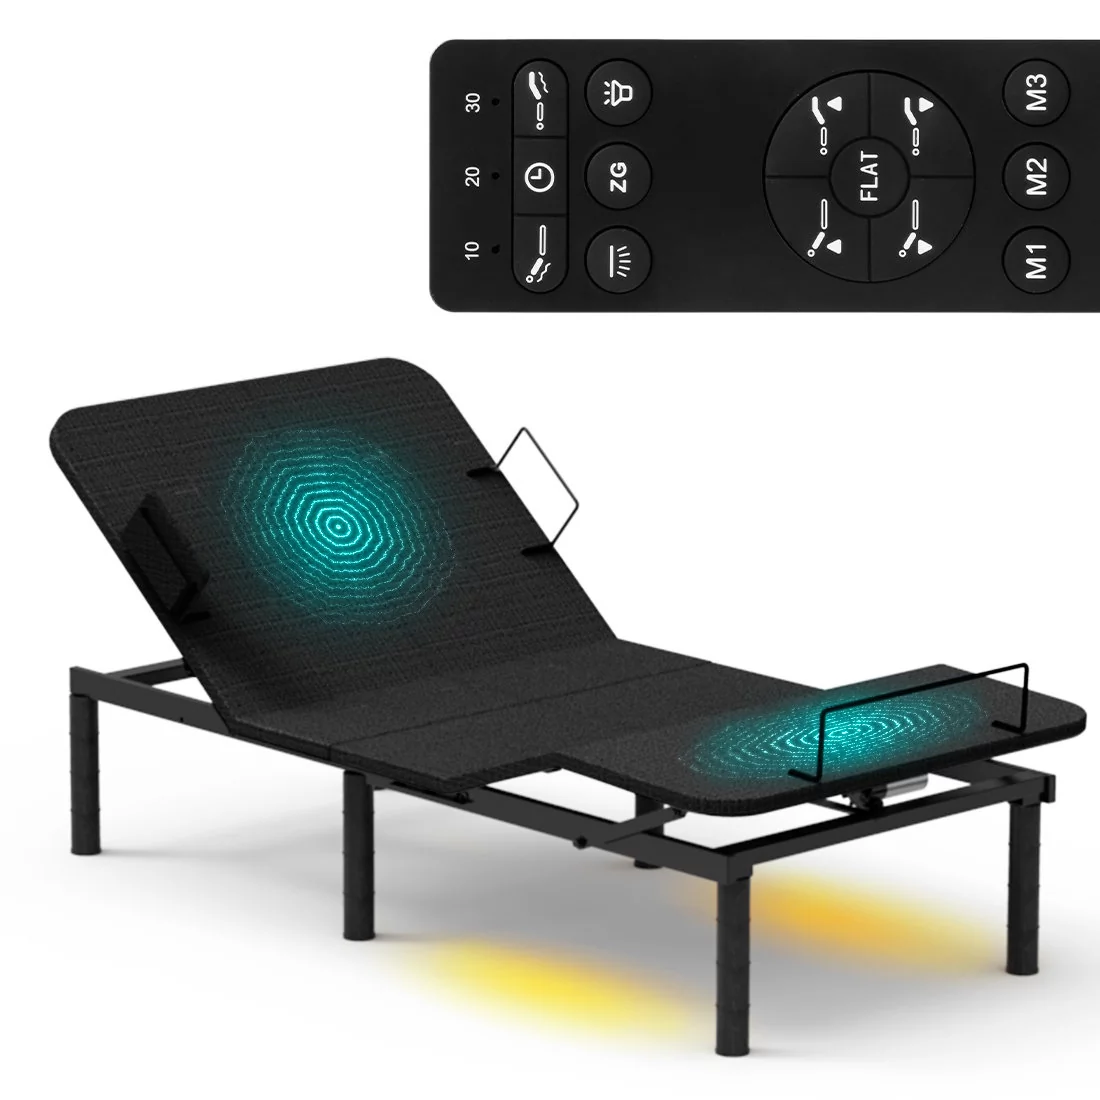 Nowoczesne łóżko regulowane elektrycznie z masażem, usb, led do sypialni 90x200 Spacetronik Dozee03